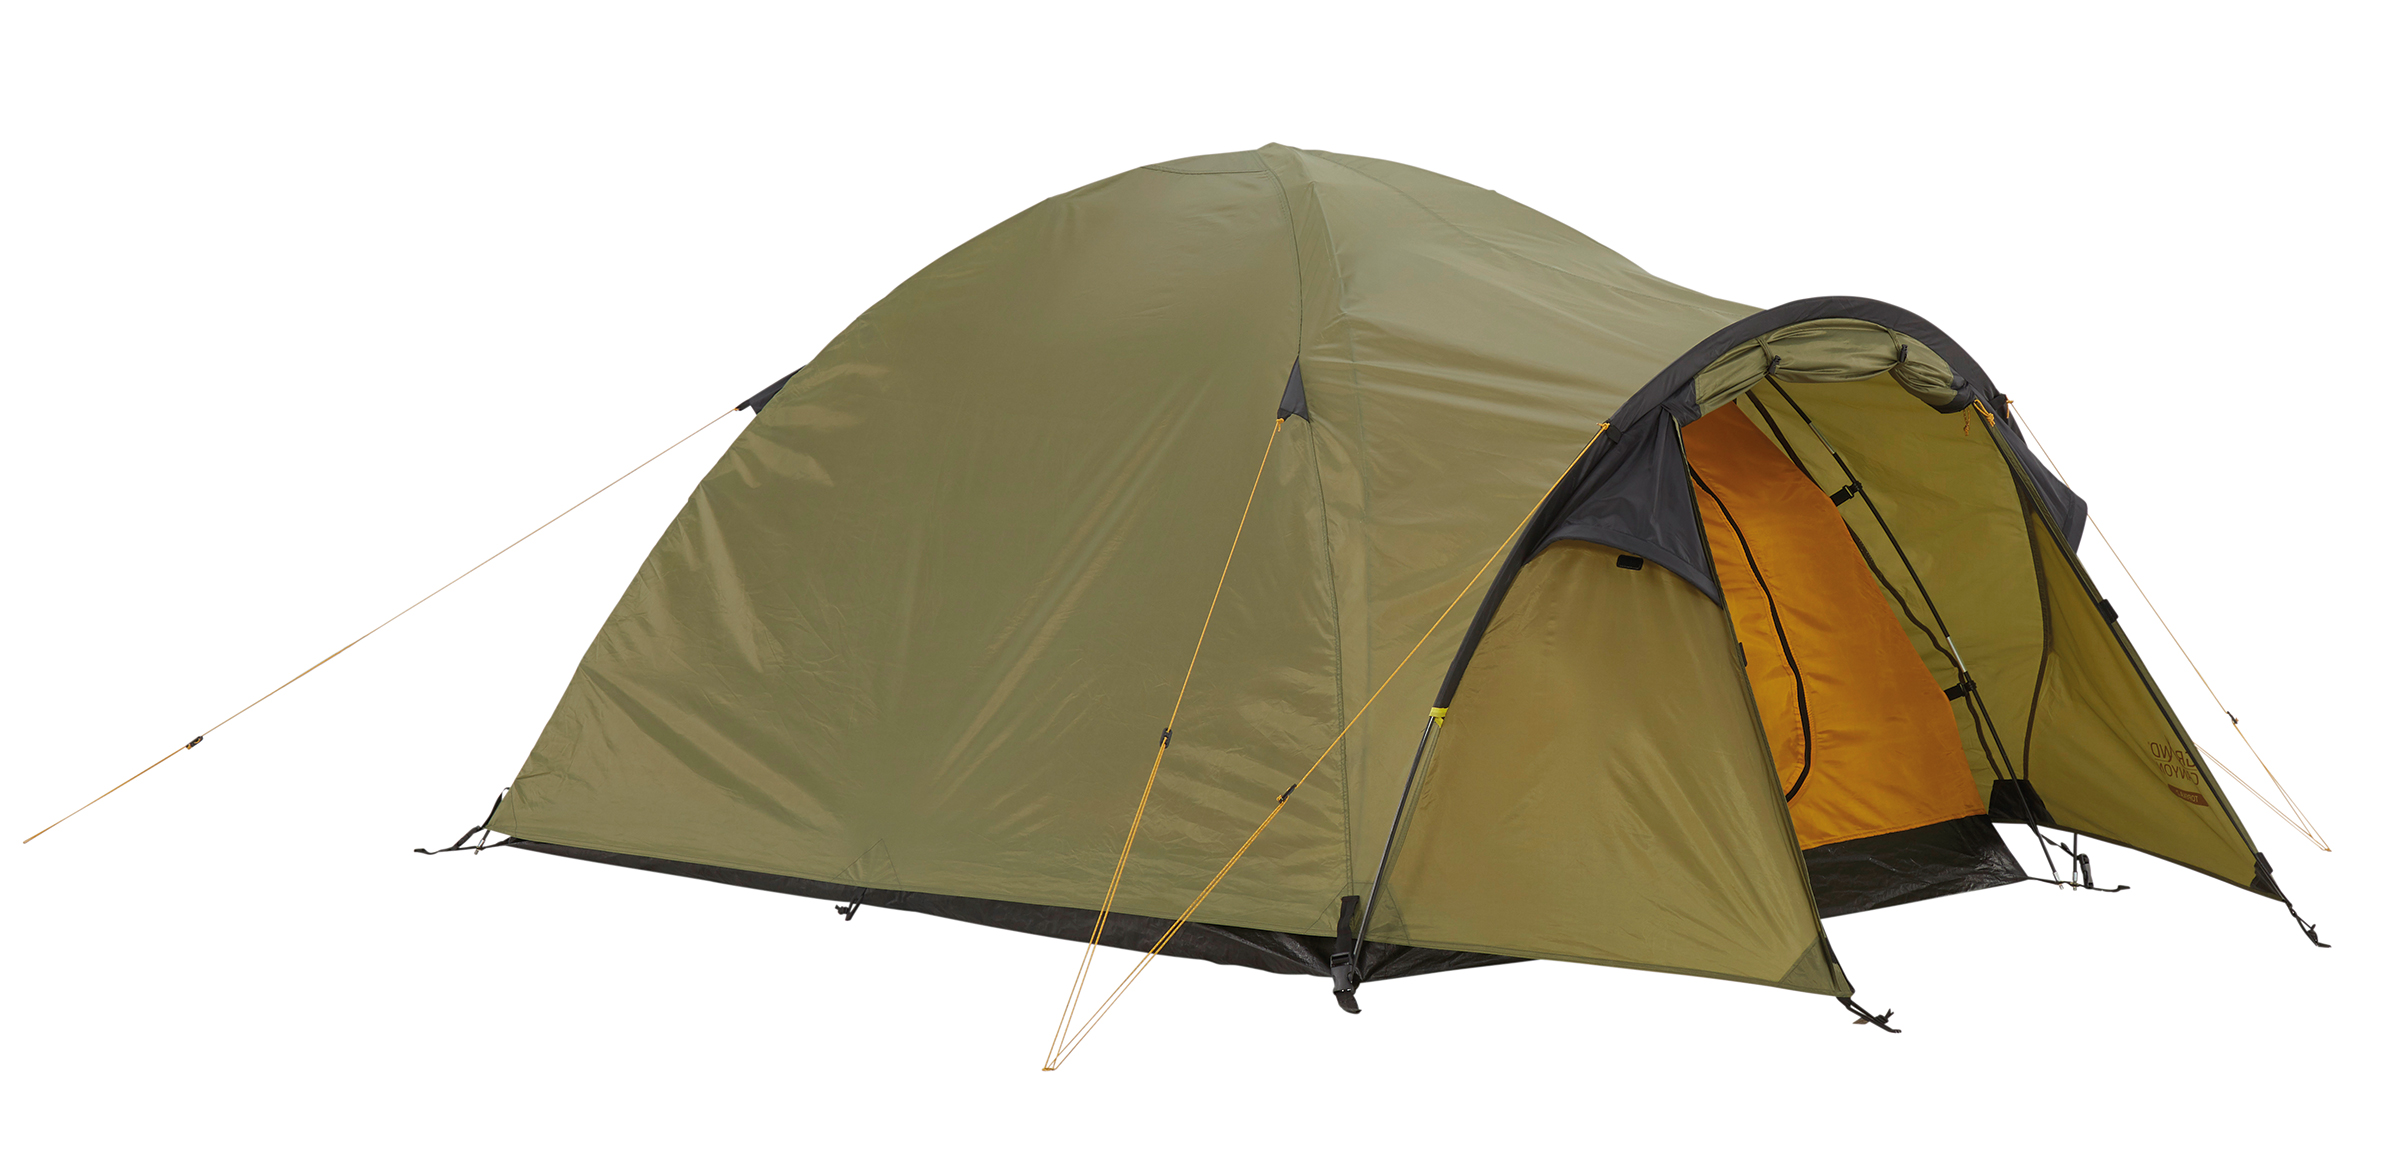 Zweimannzelt Igluzelt Zelt Oliv Camping Outdoor Angelzelt 